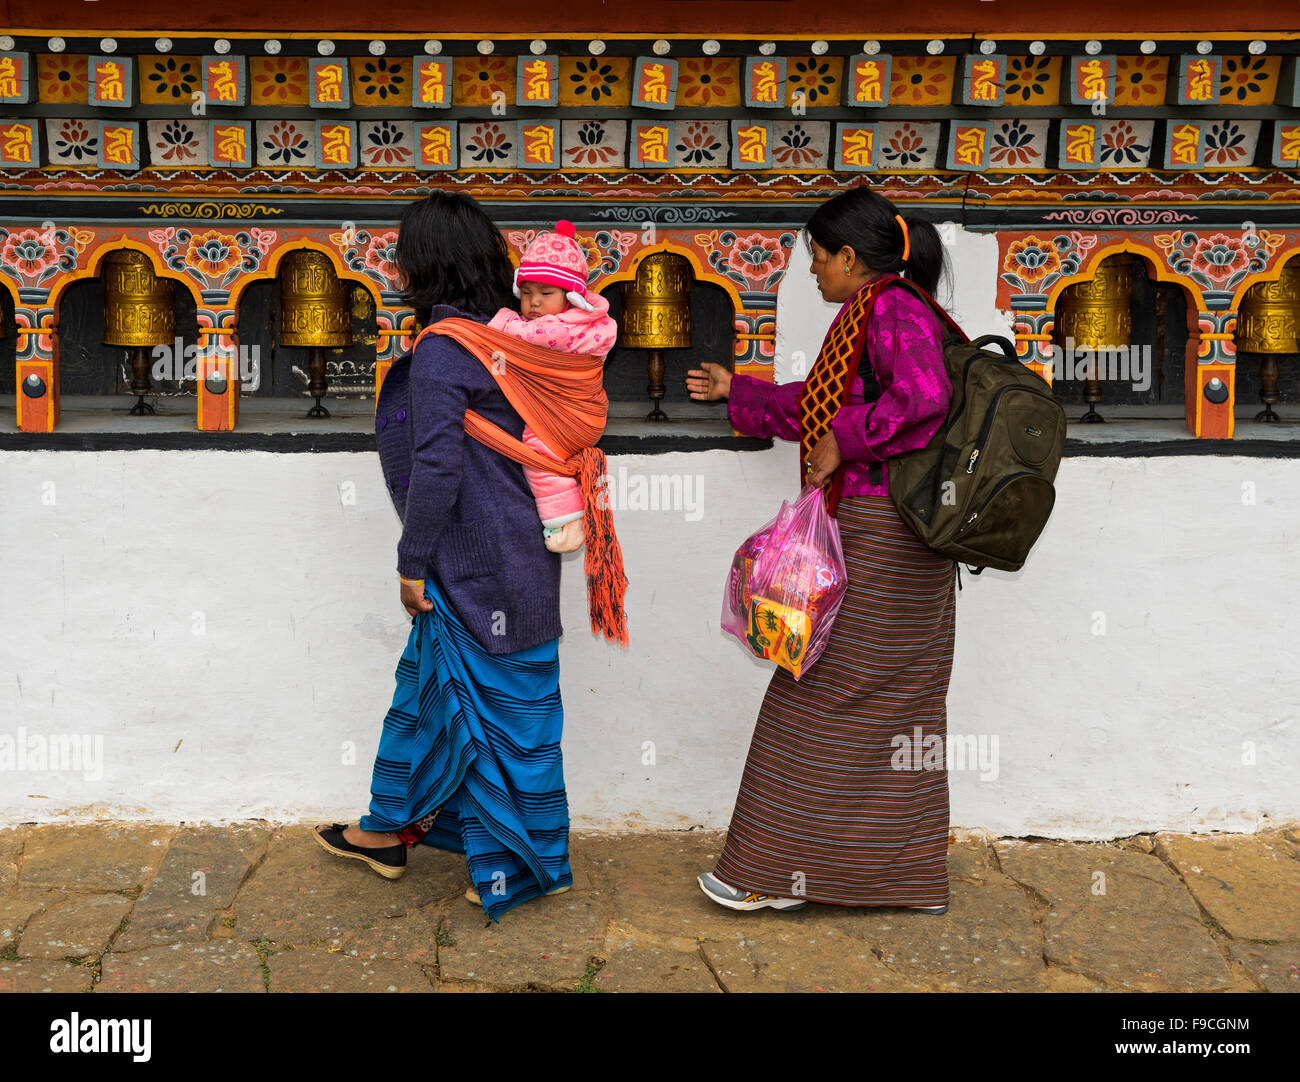 Deux femmes locales avec un enfant à l'arrière en tournant la prière mills, Carillon monastère Lhakhang près de Lobesa, Bhoutan Banque D'Images